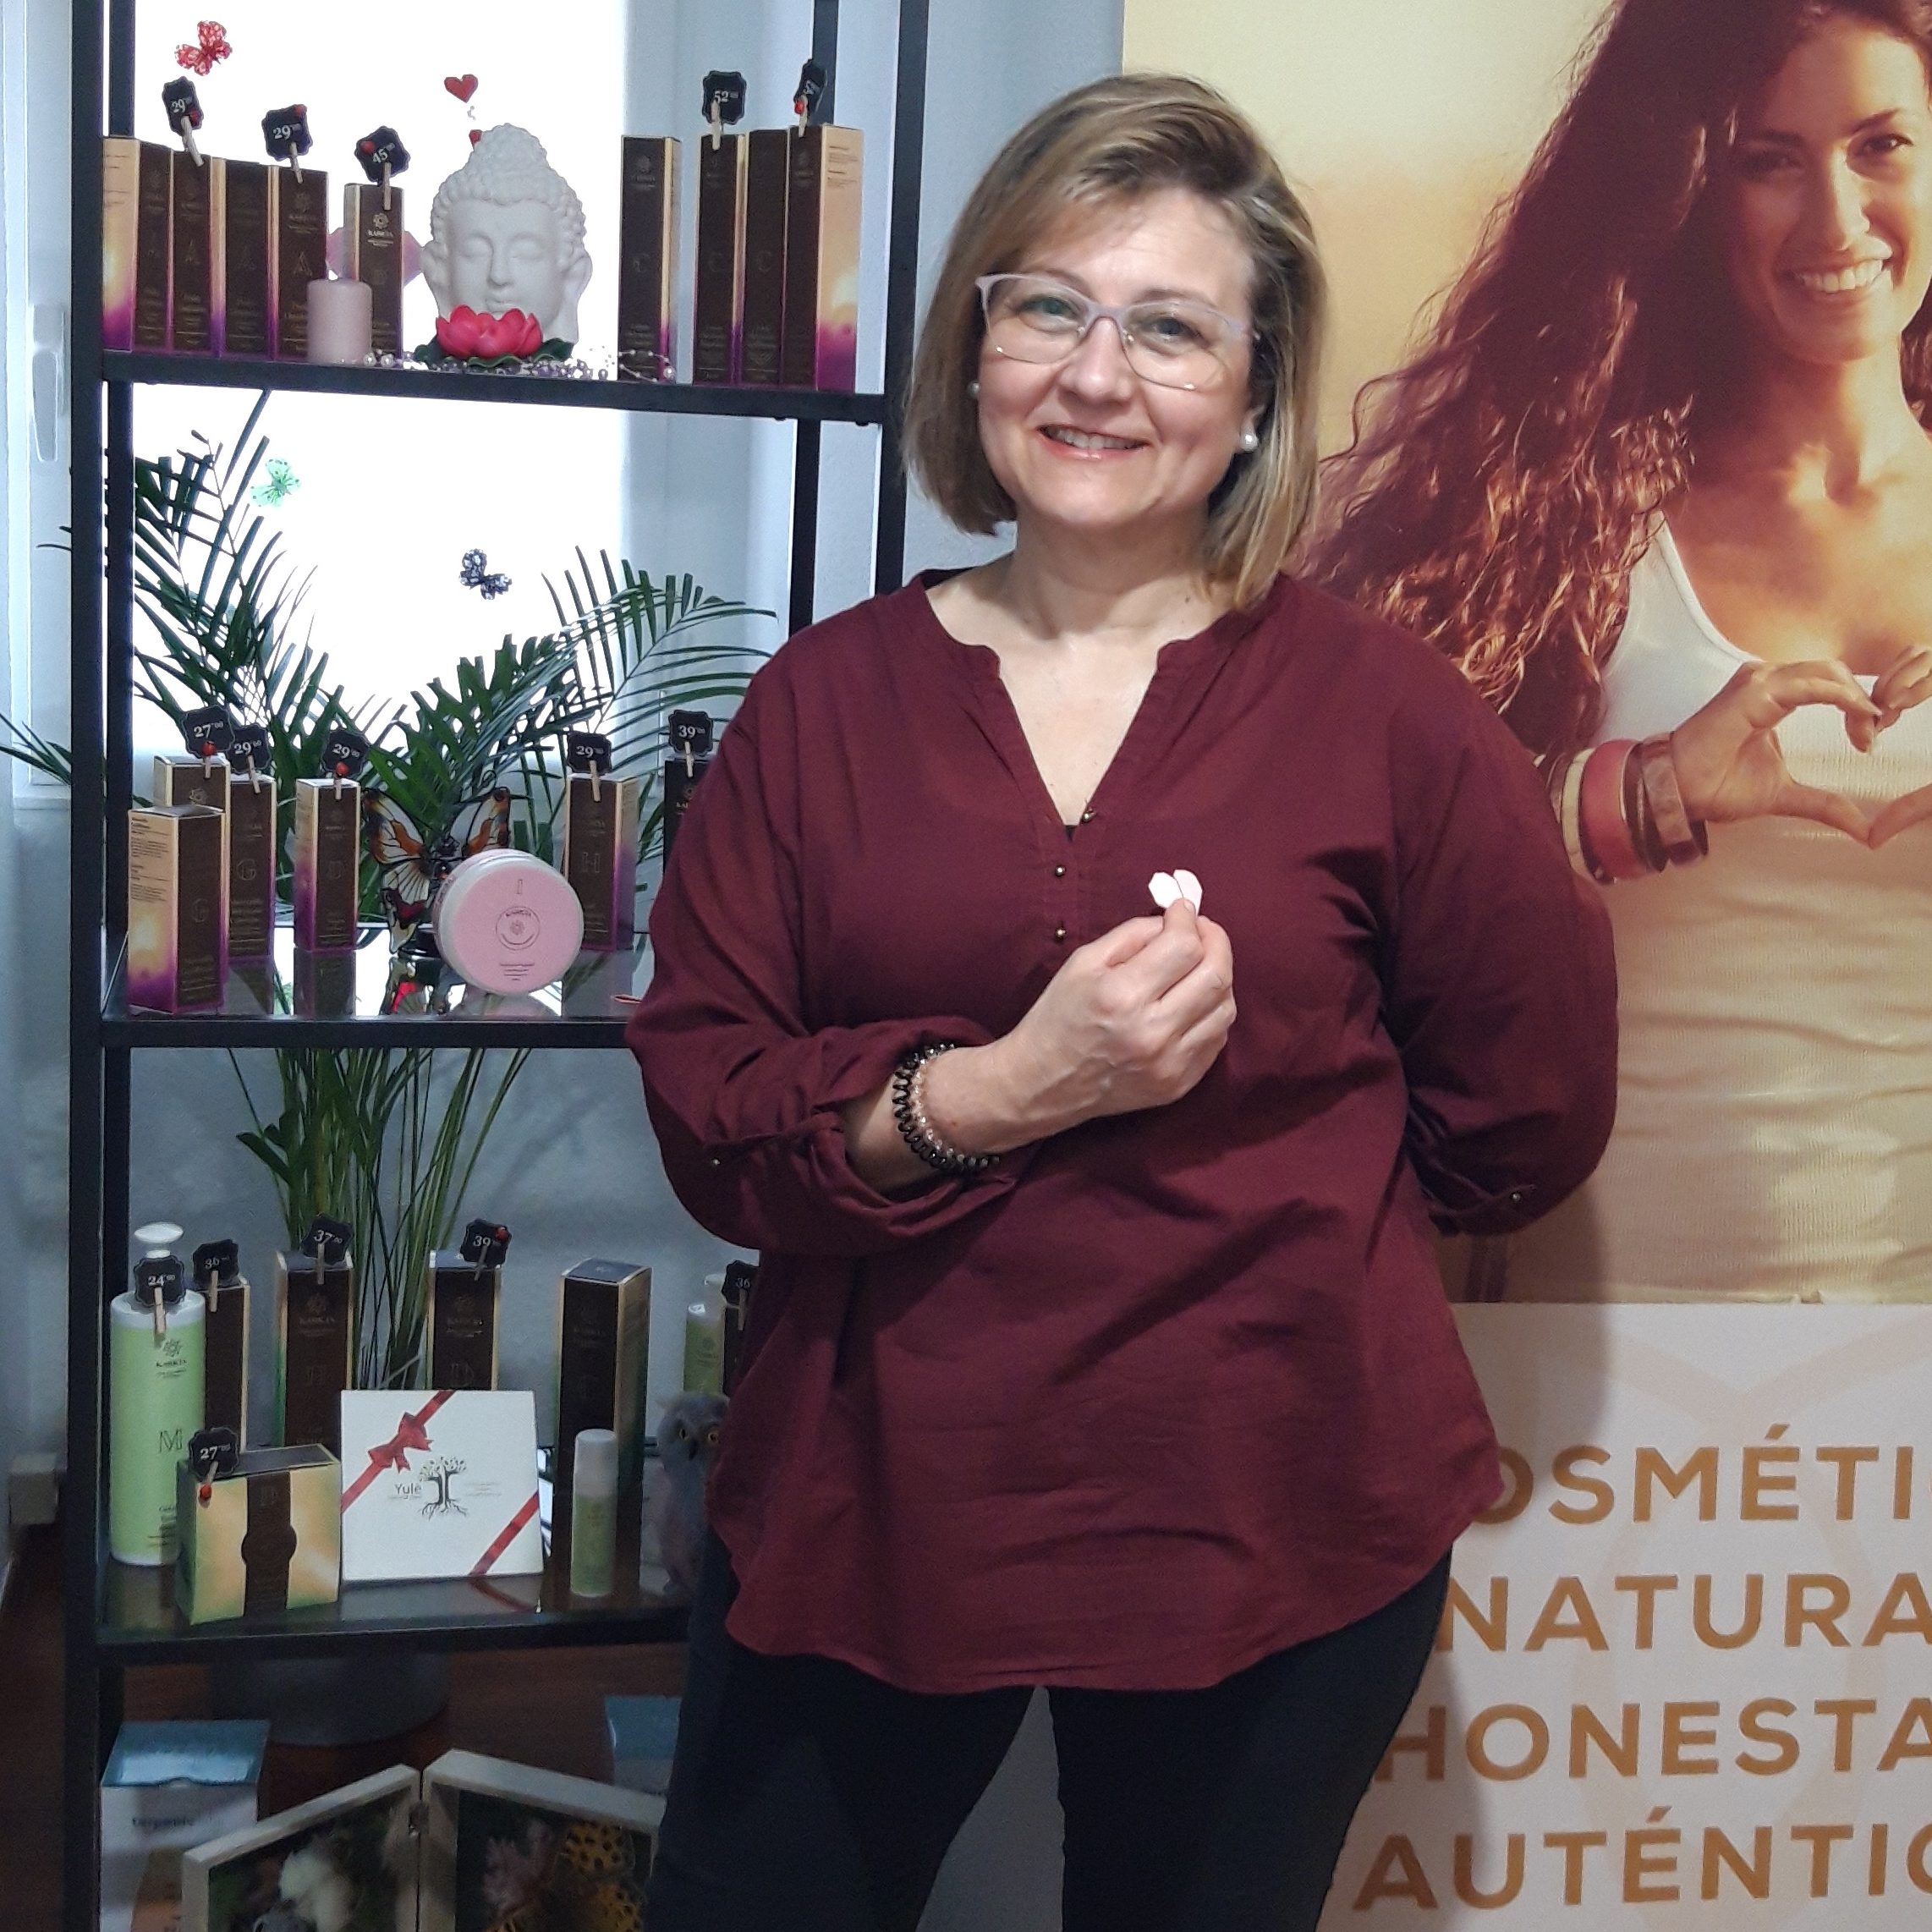 Mujer de centro estetico sonriendo en frente de productos karicia